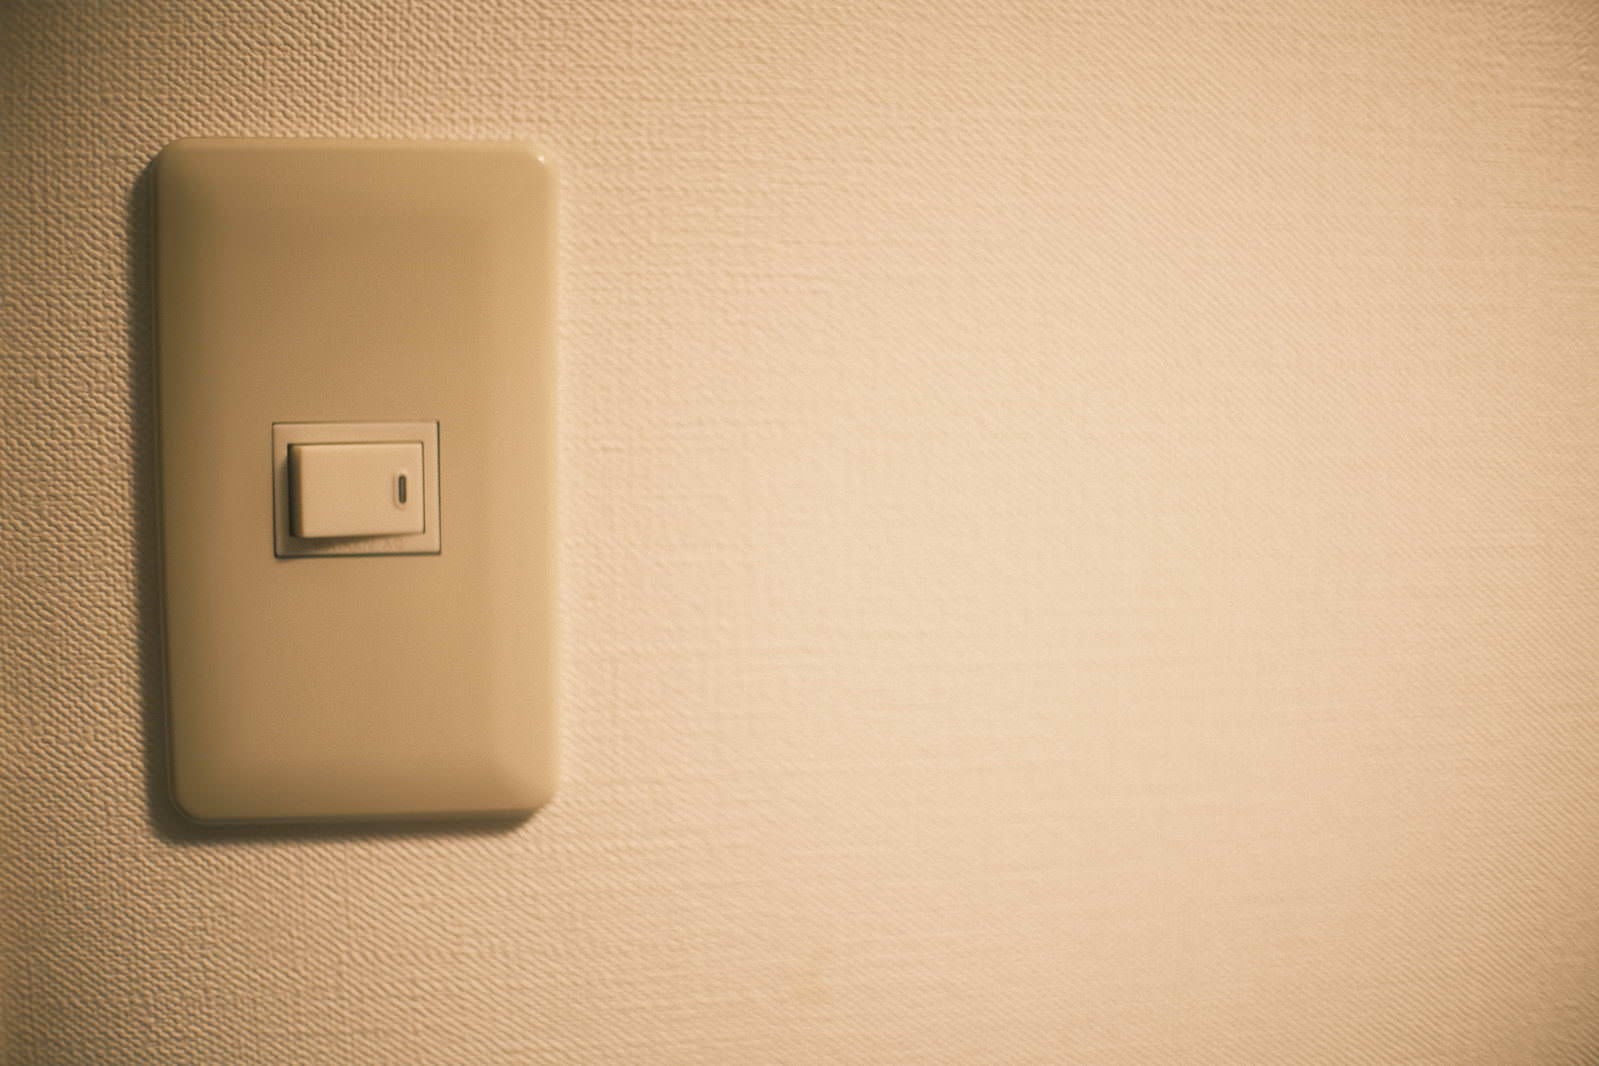 「壁に付いたスイッチ」の写真